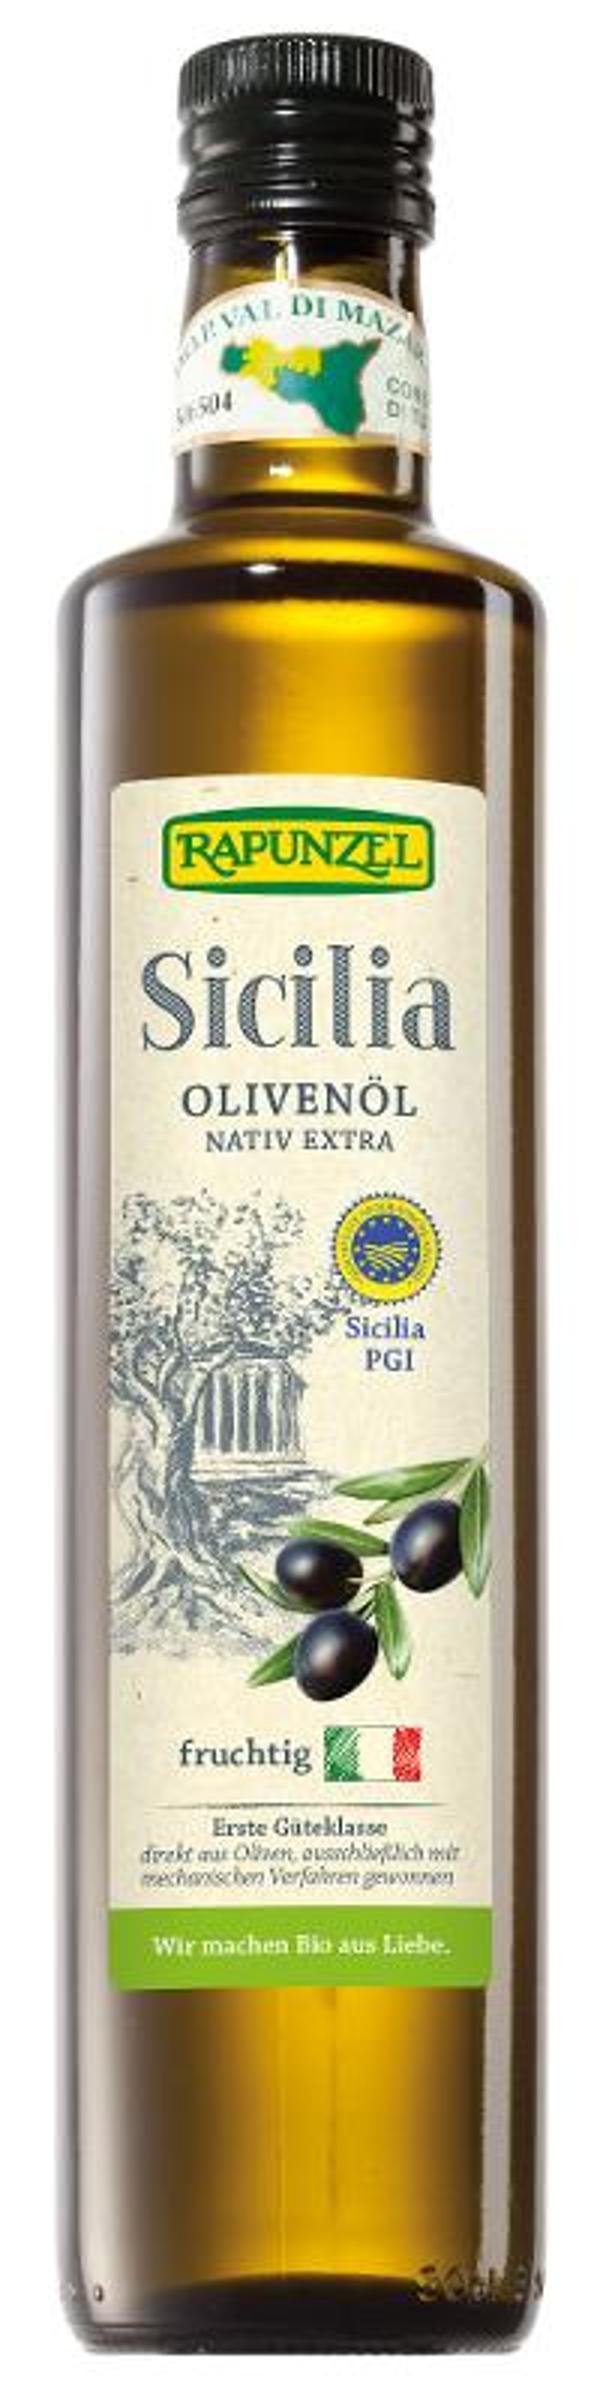 Produktfoto zu Olivenöl Sicilia DOP nativ ext